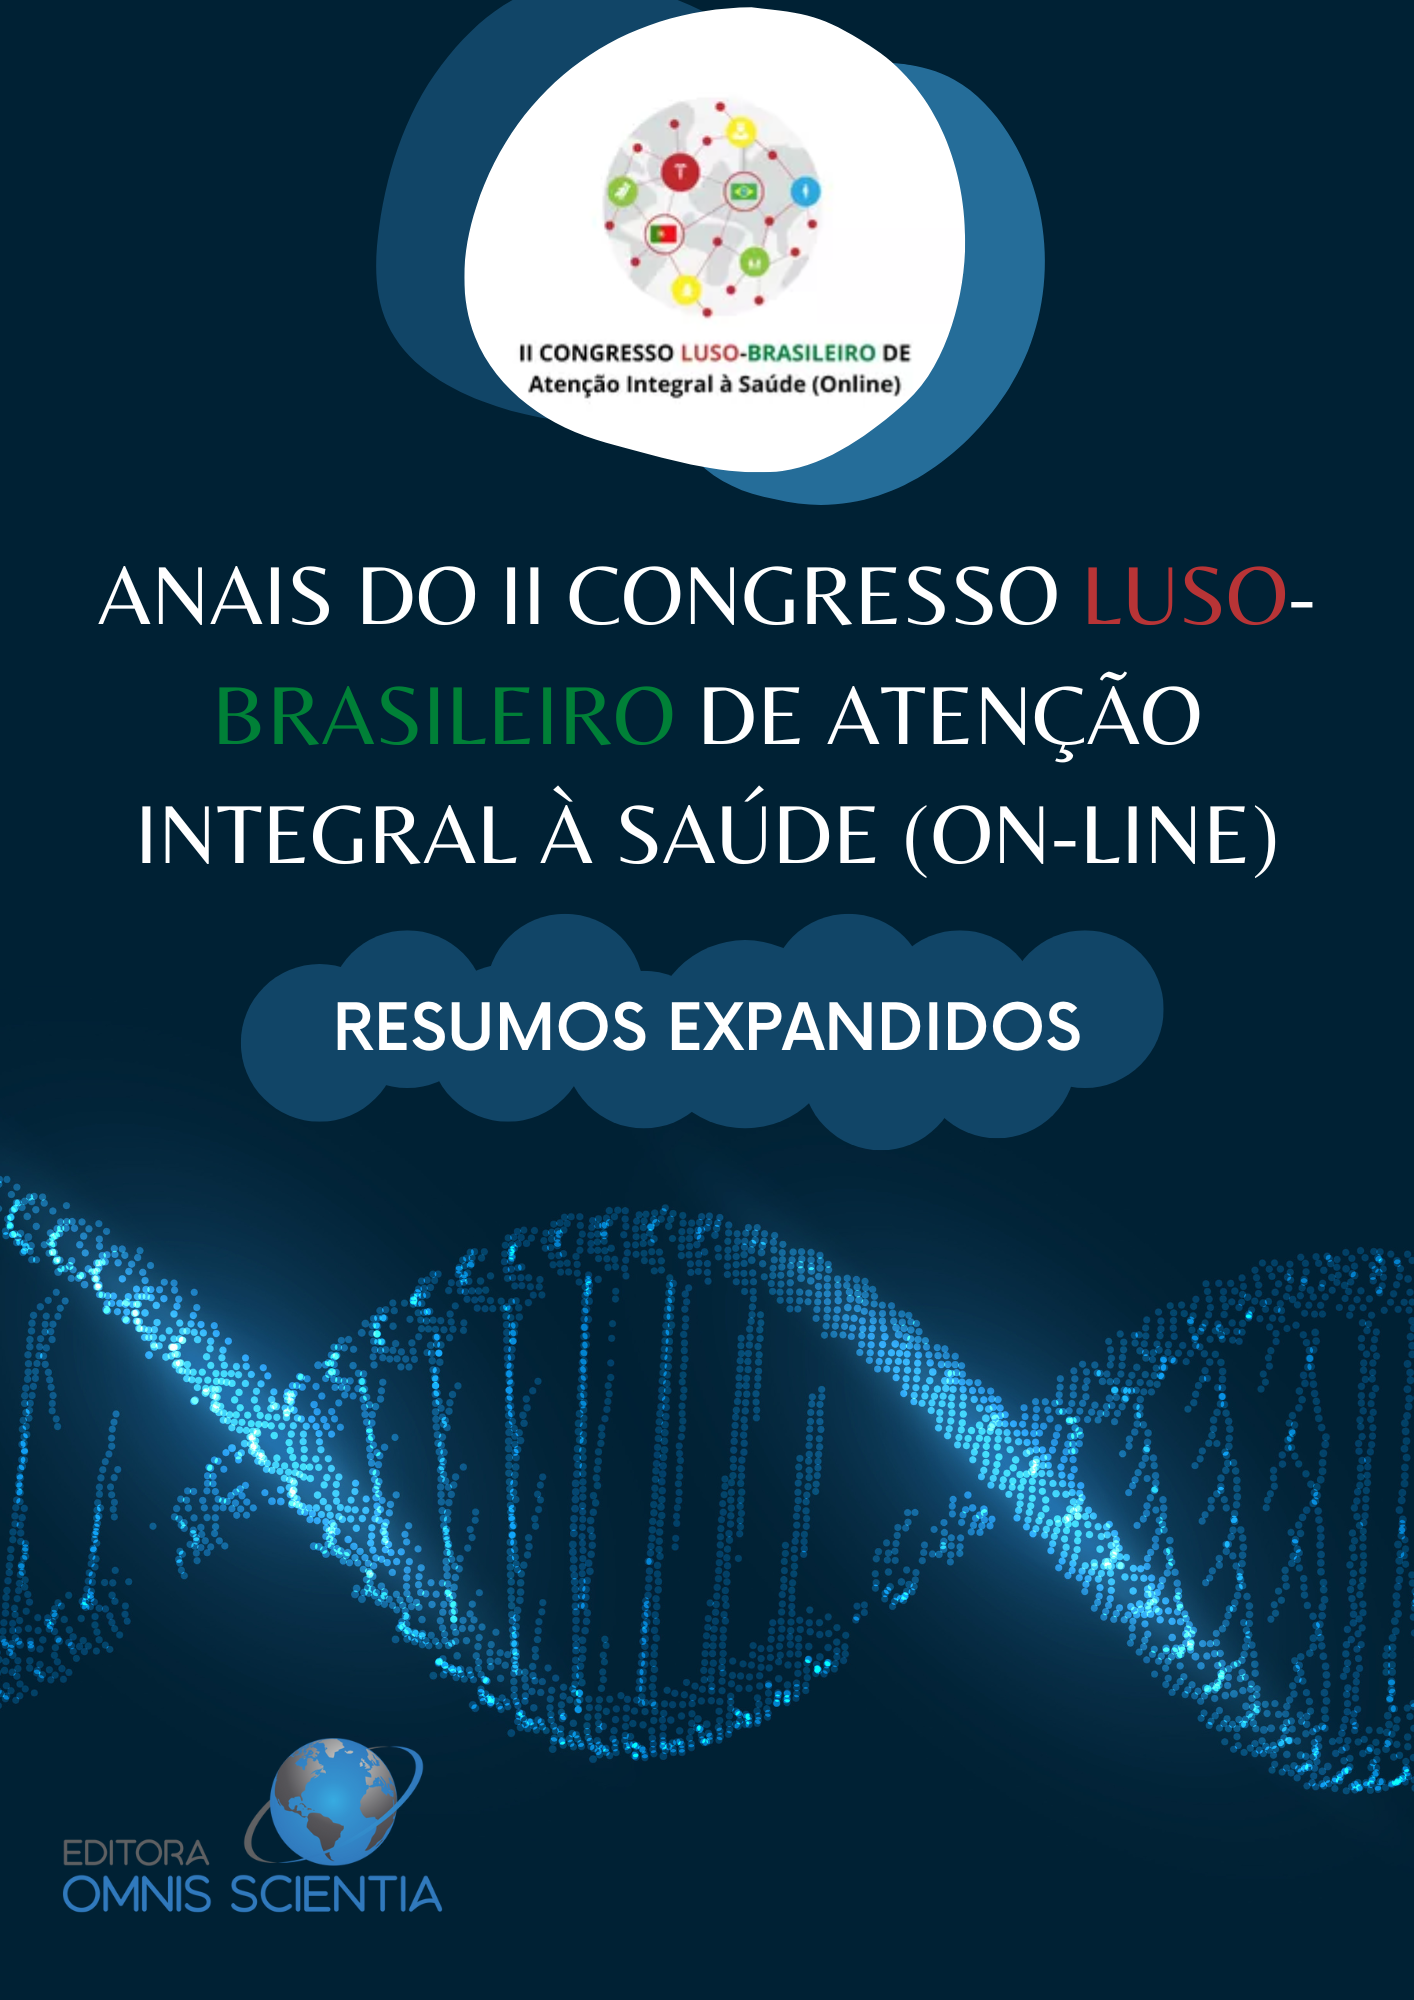 ANAIS DO II CONGRESSO LUSO-BRASILEIRO DE ATENÇÃO INTEGRAL À SAÚDE (ON-LINE) – RESUMOS EXPANDIDOS